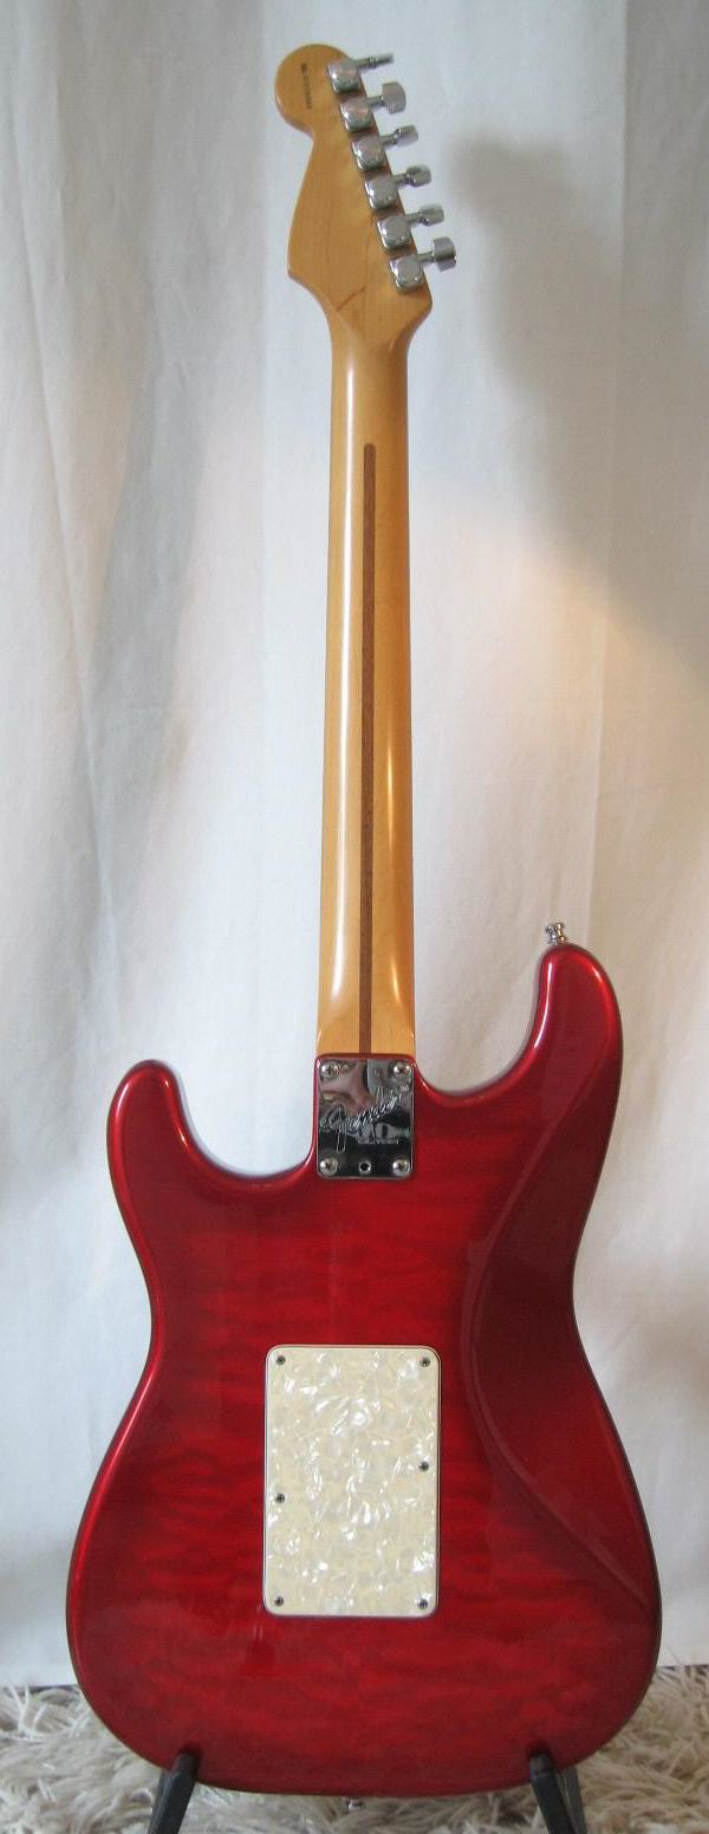 Fender-Stratocaster-Ultra-1997-e.jpg